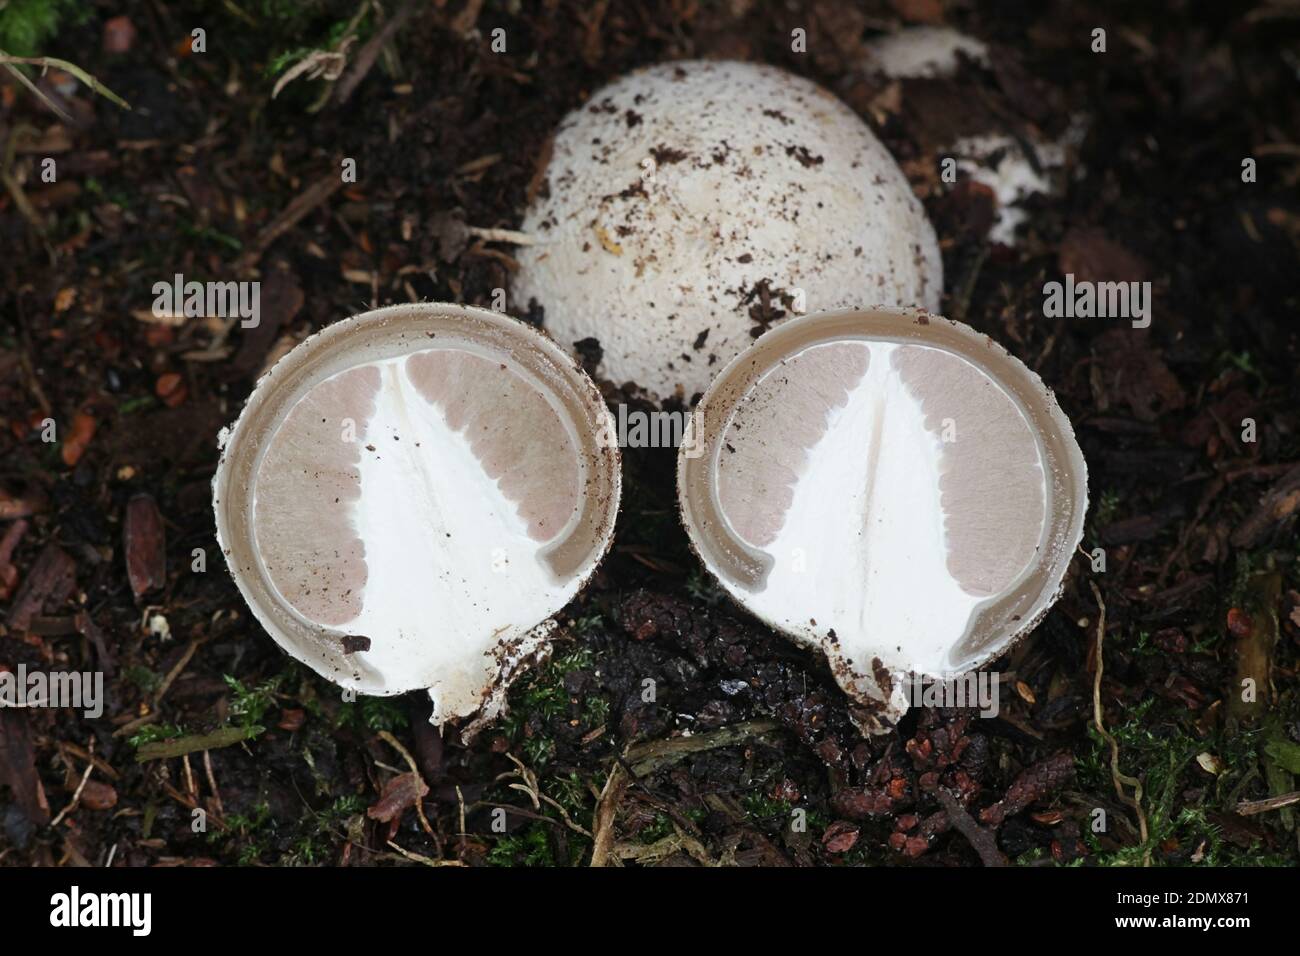 Phallus impudicus, conosciuto come lo stinkhorn comune, il primo stadio dell'uovo a volte ha chiamato l'uovo della strega si è aperto Foto Stock